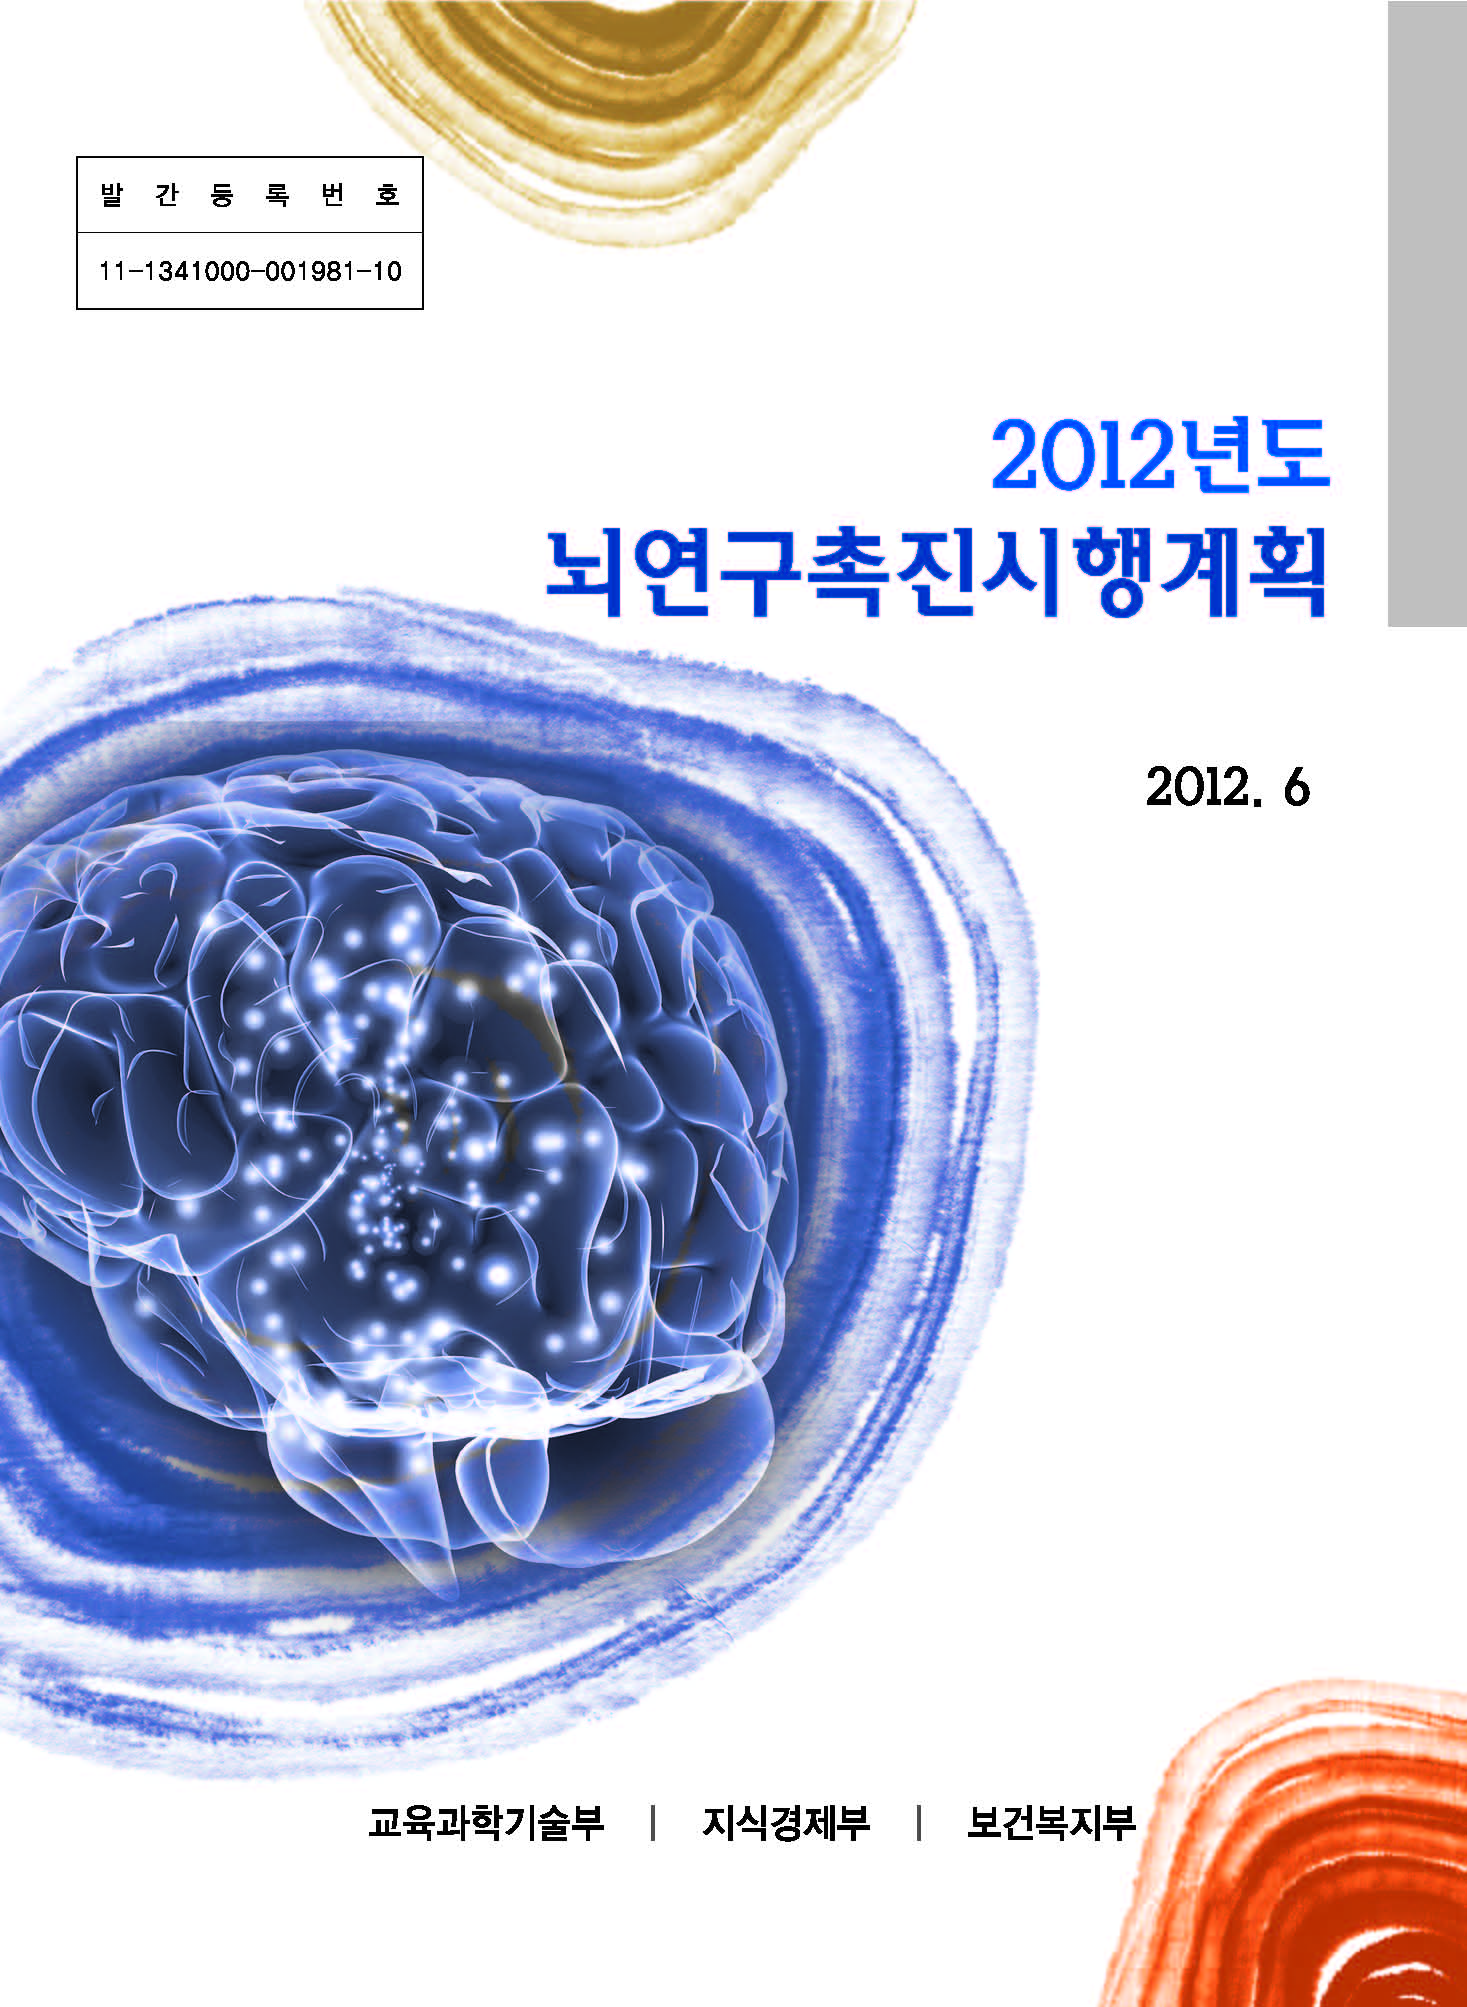 2012년도 뇌연구촉진시행계획